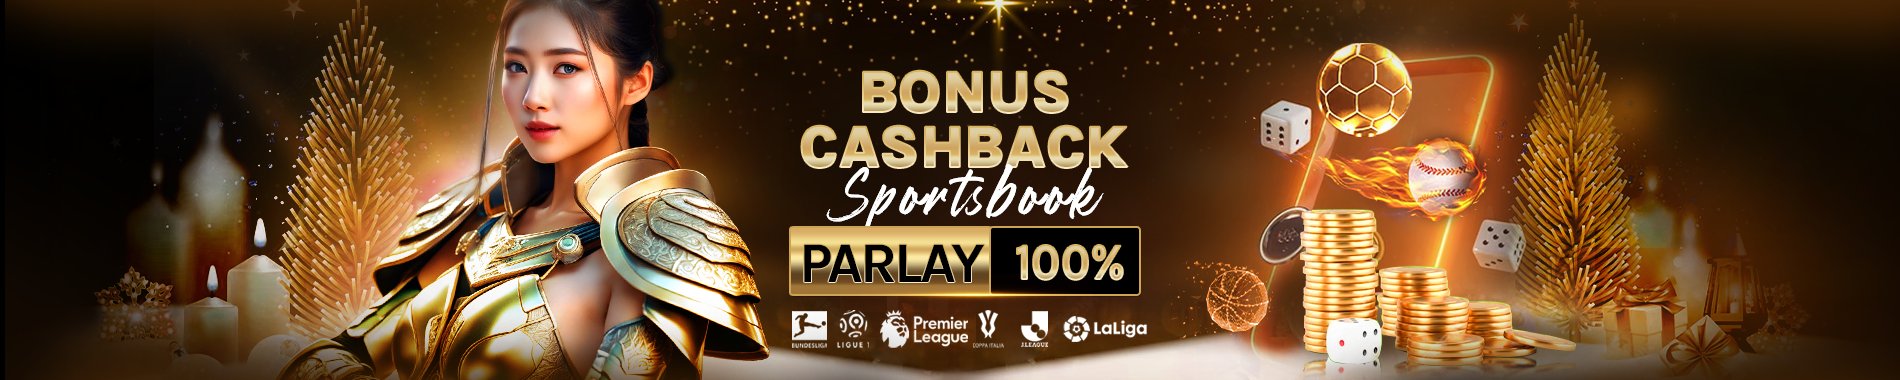 Togel9naga Bonus Cashback Parlay 100%